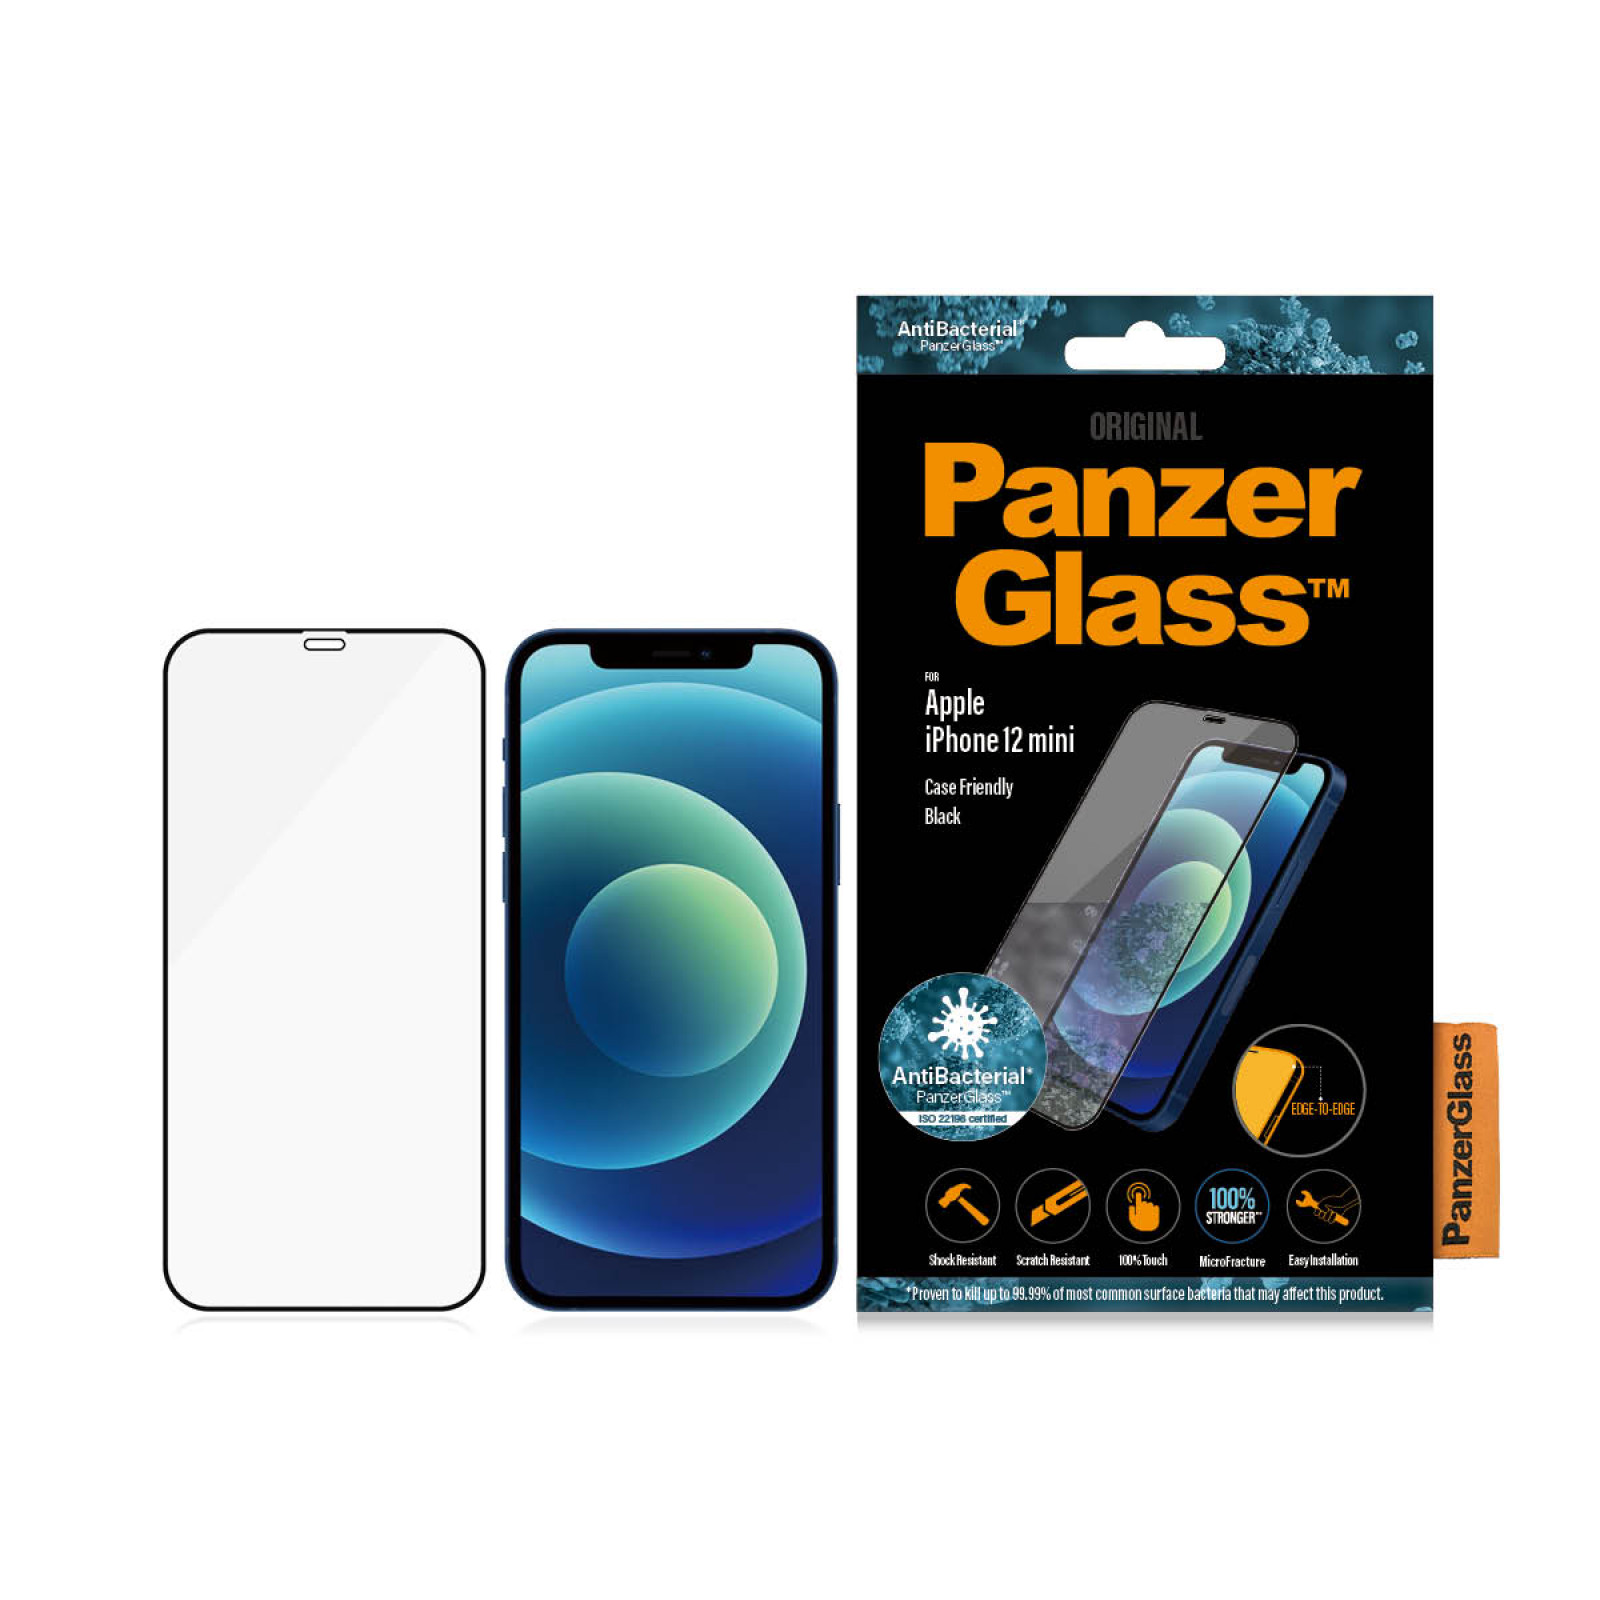 Стъклен протектор PanzerGlass за Apple iPhone 12 Mini Case Friendly AntiBacterial Черен